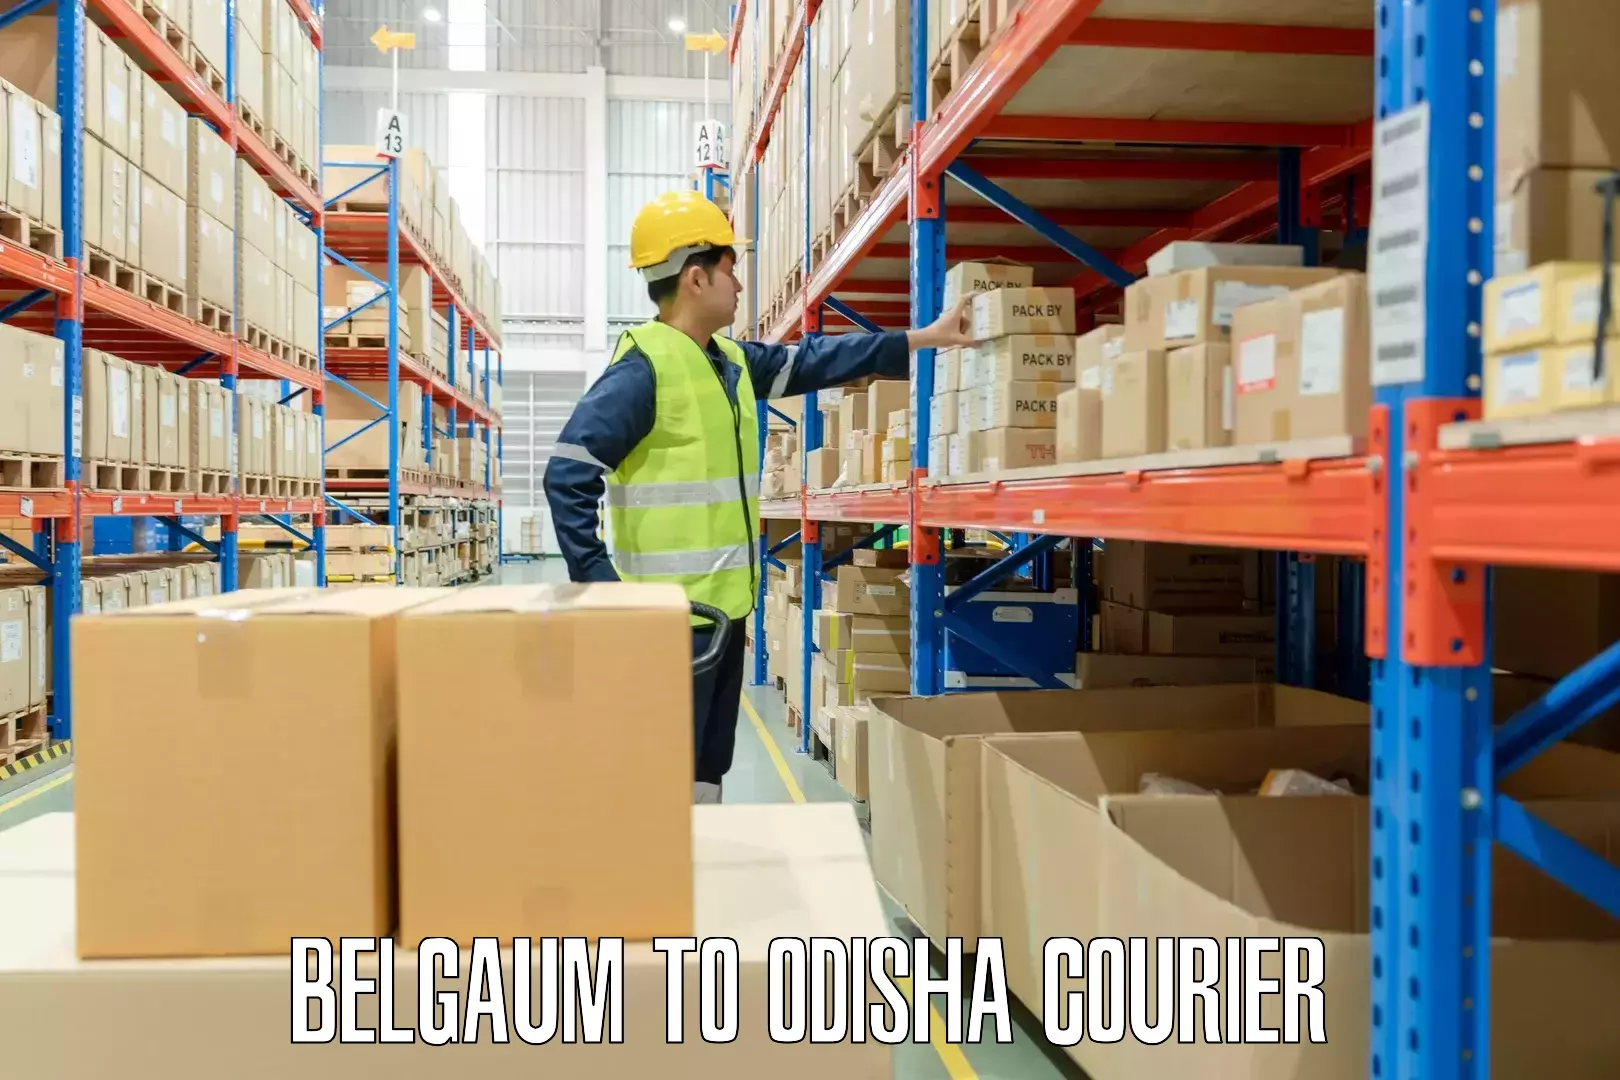 Overnight luggage courier Belgaum to Odisha